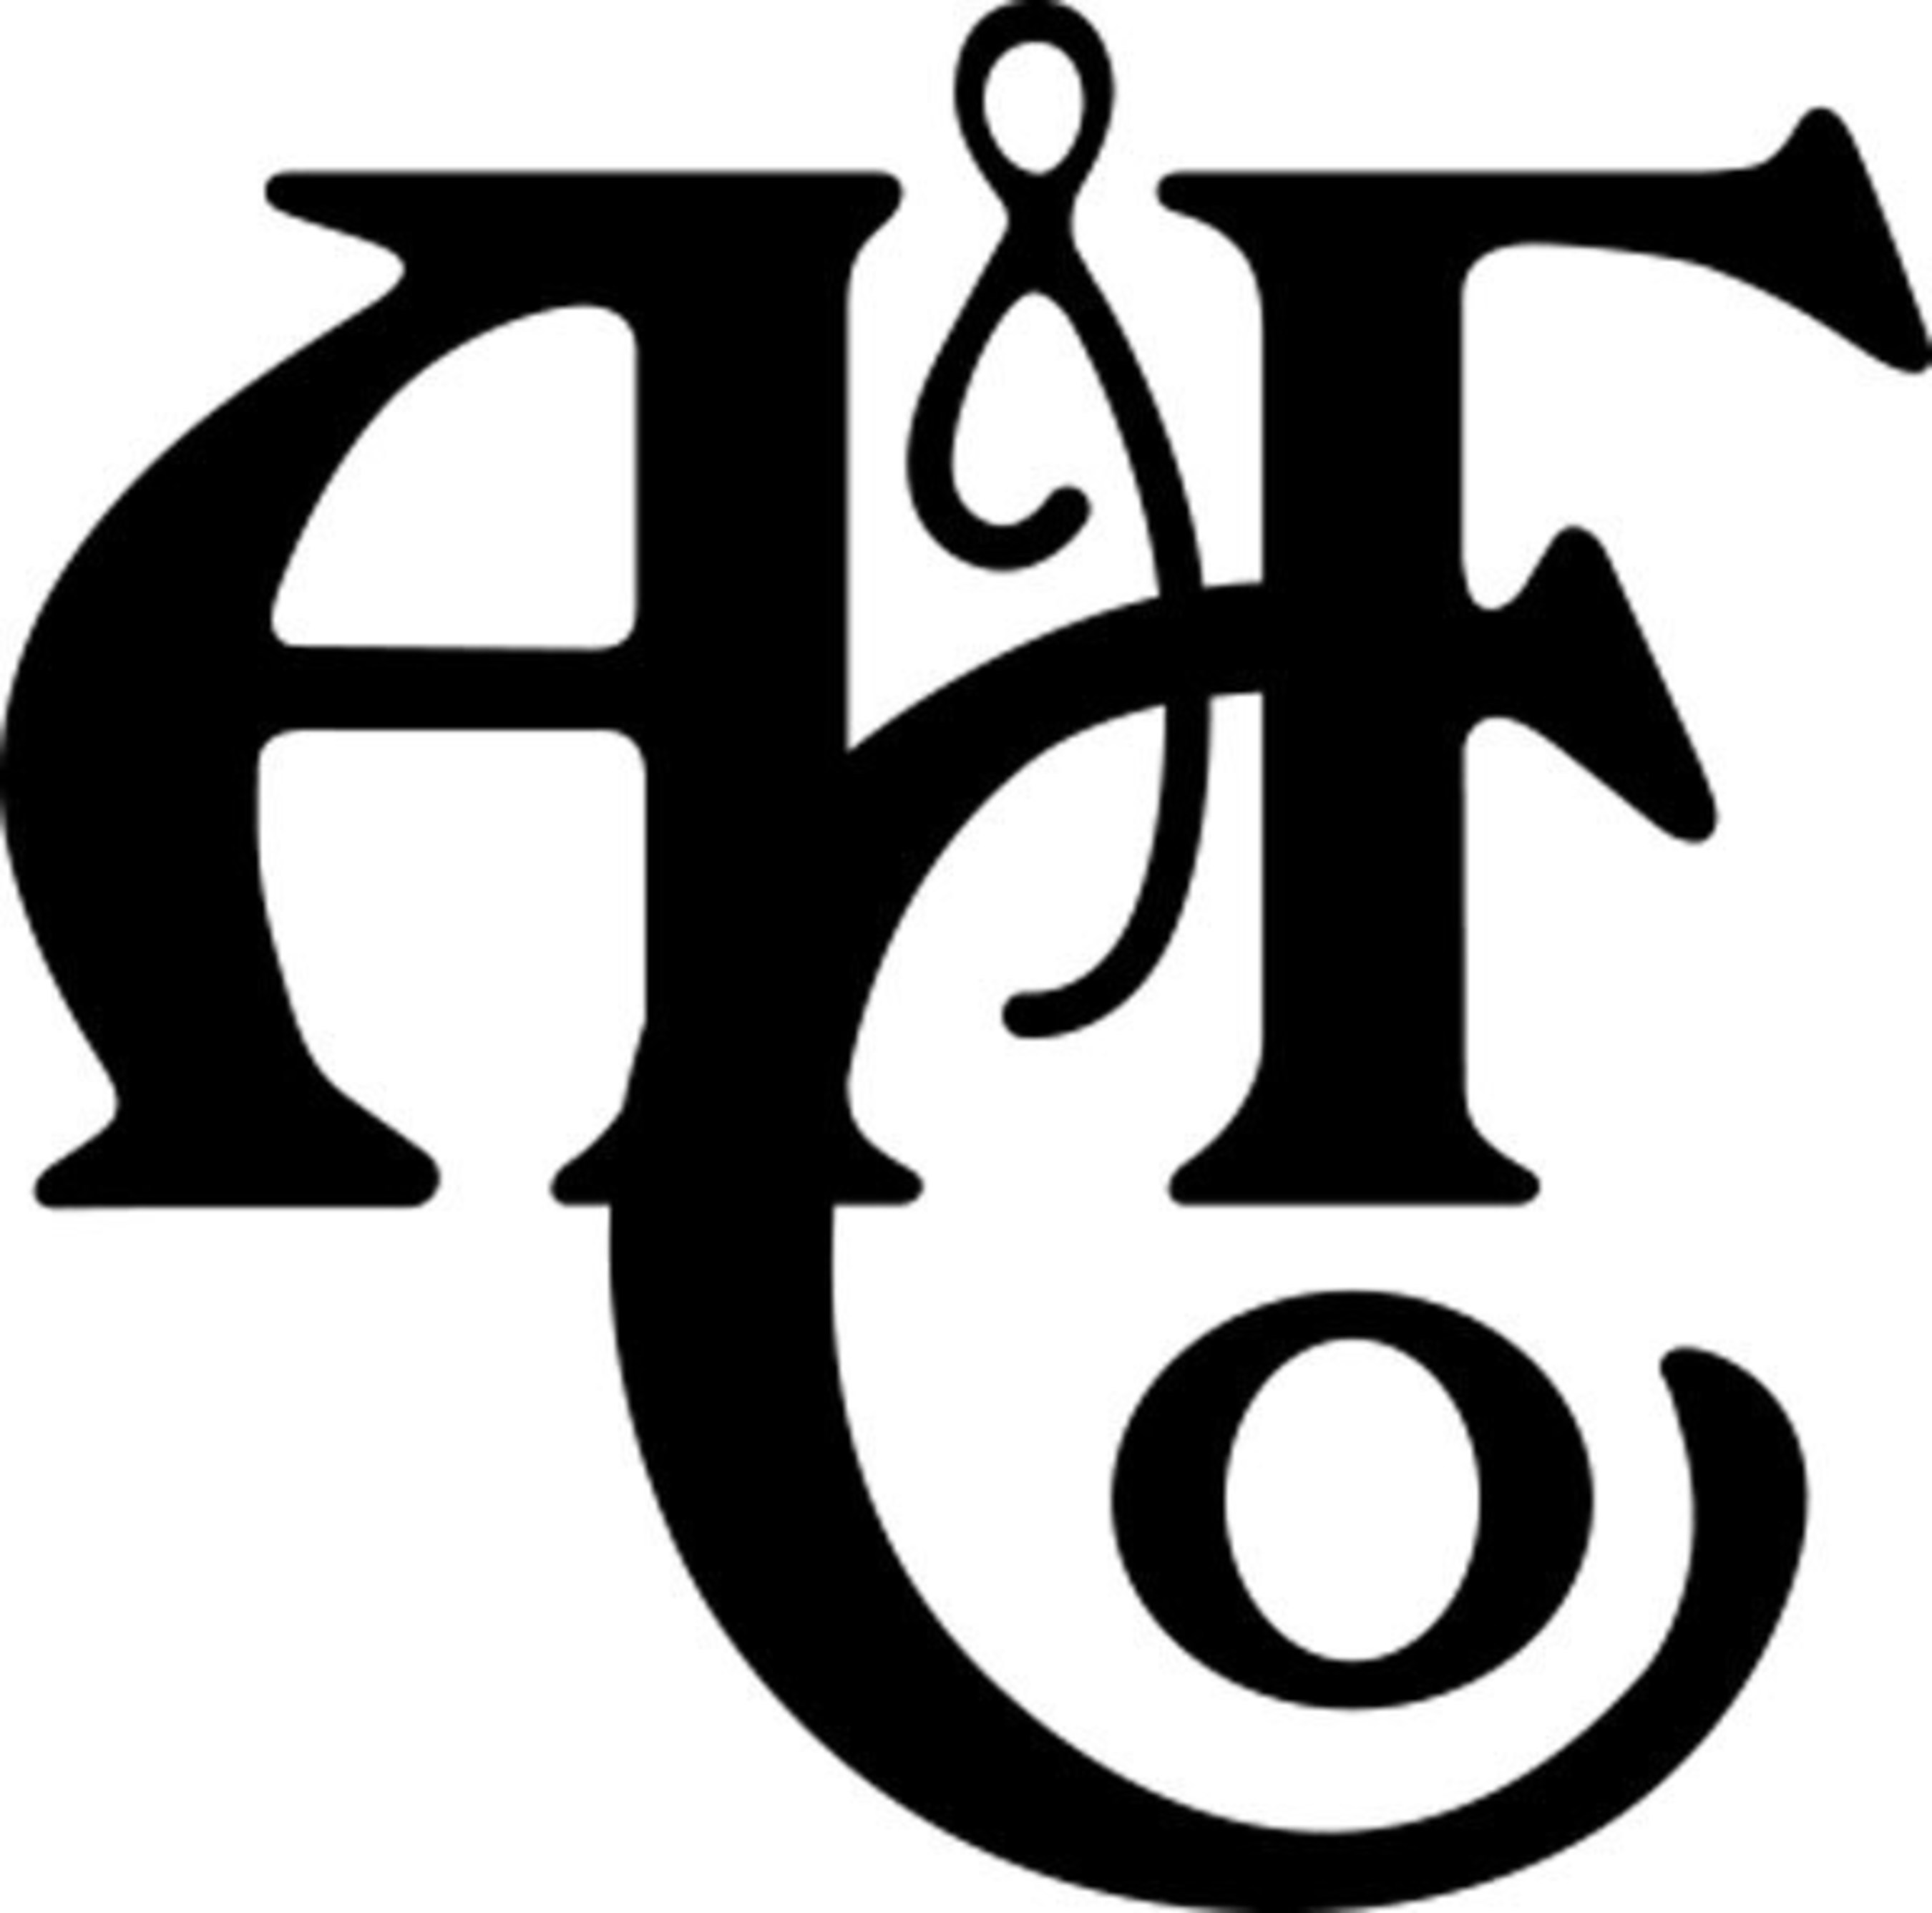 a&f brand